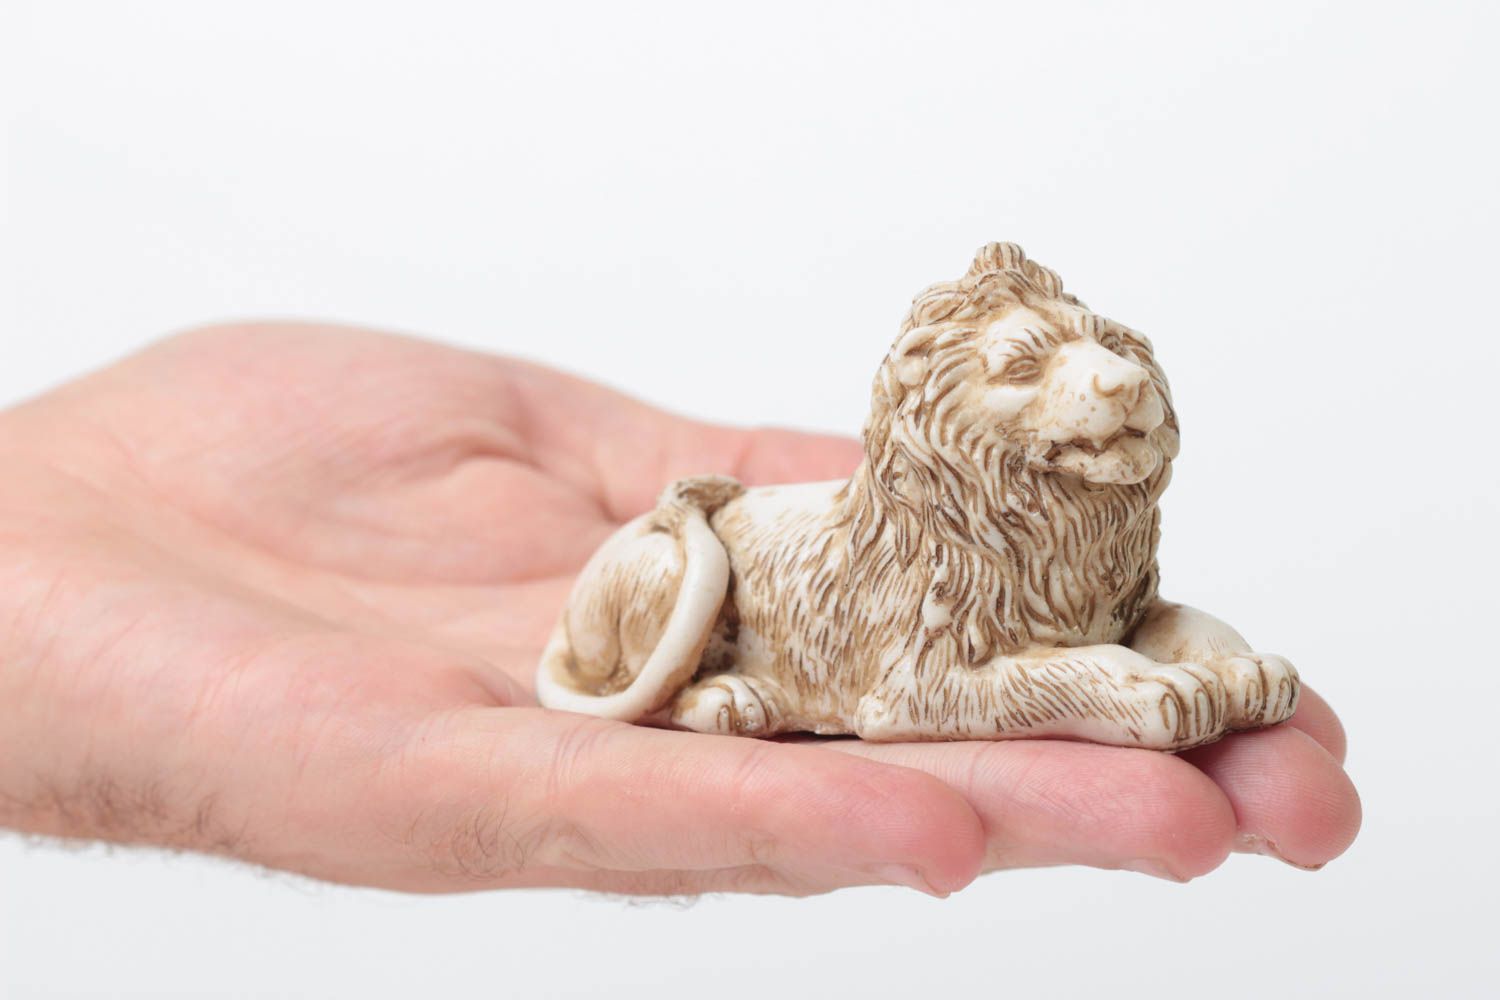 Миниатюрная статуэтка из полимерной смолы в виде лежащего льва ручной работы фото 5